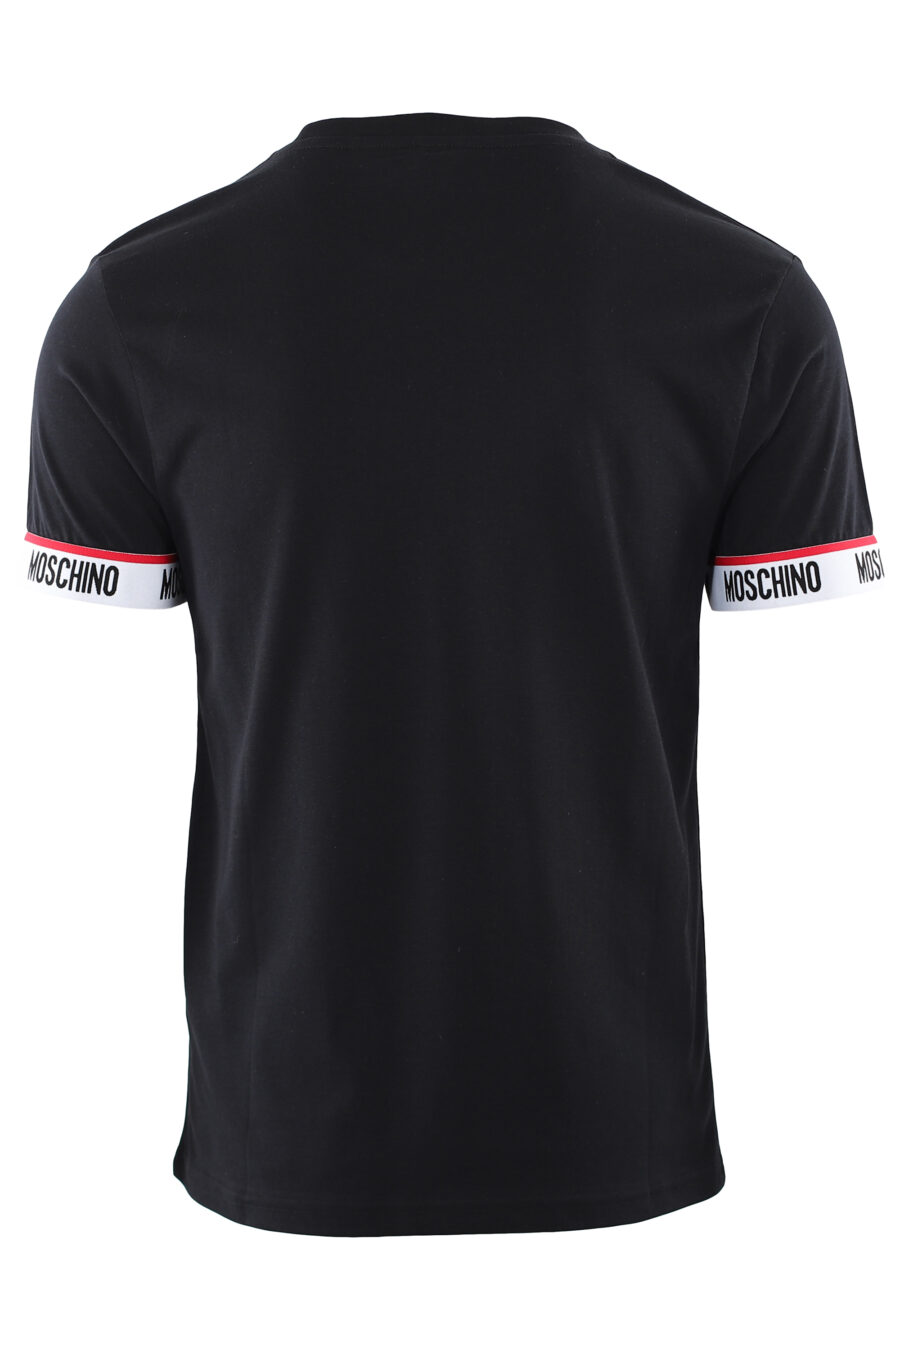 Camiseta negra con logotipo en cinta hombros mangas - IMG 7424